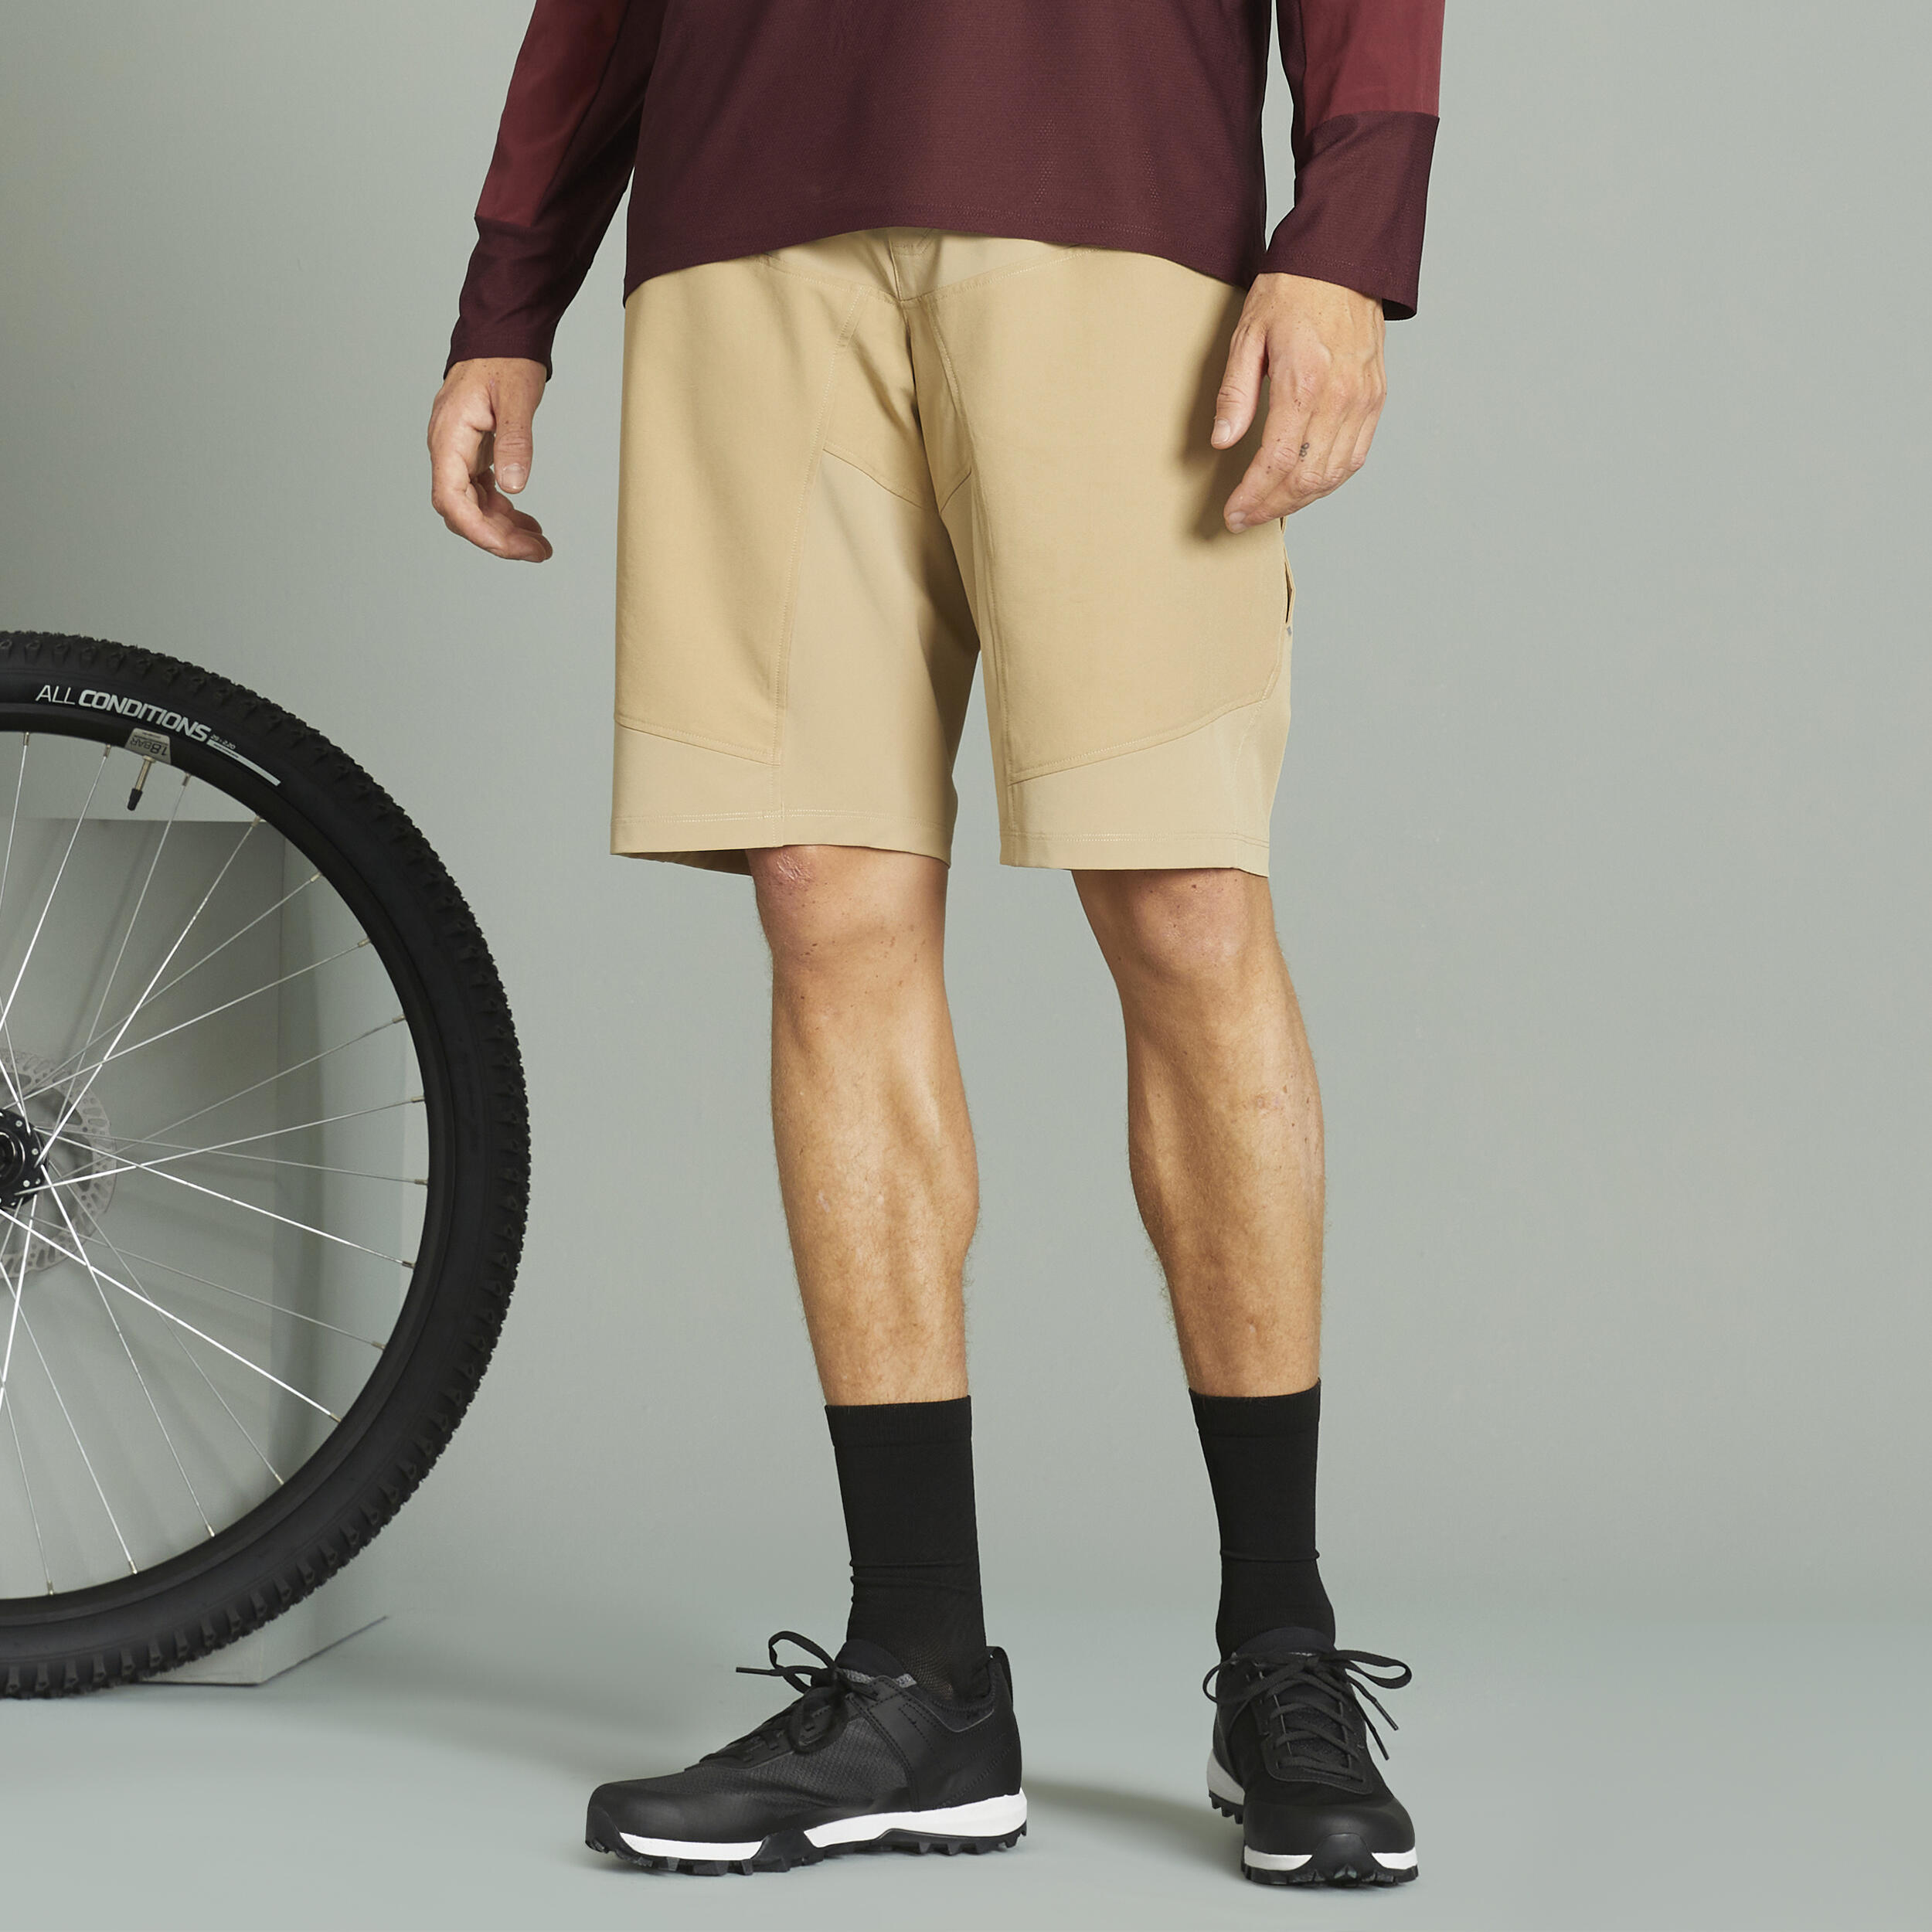 ROCKRIDER Men's Mountain Biking Shorts EXPL 500 - Beige